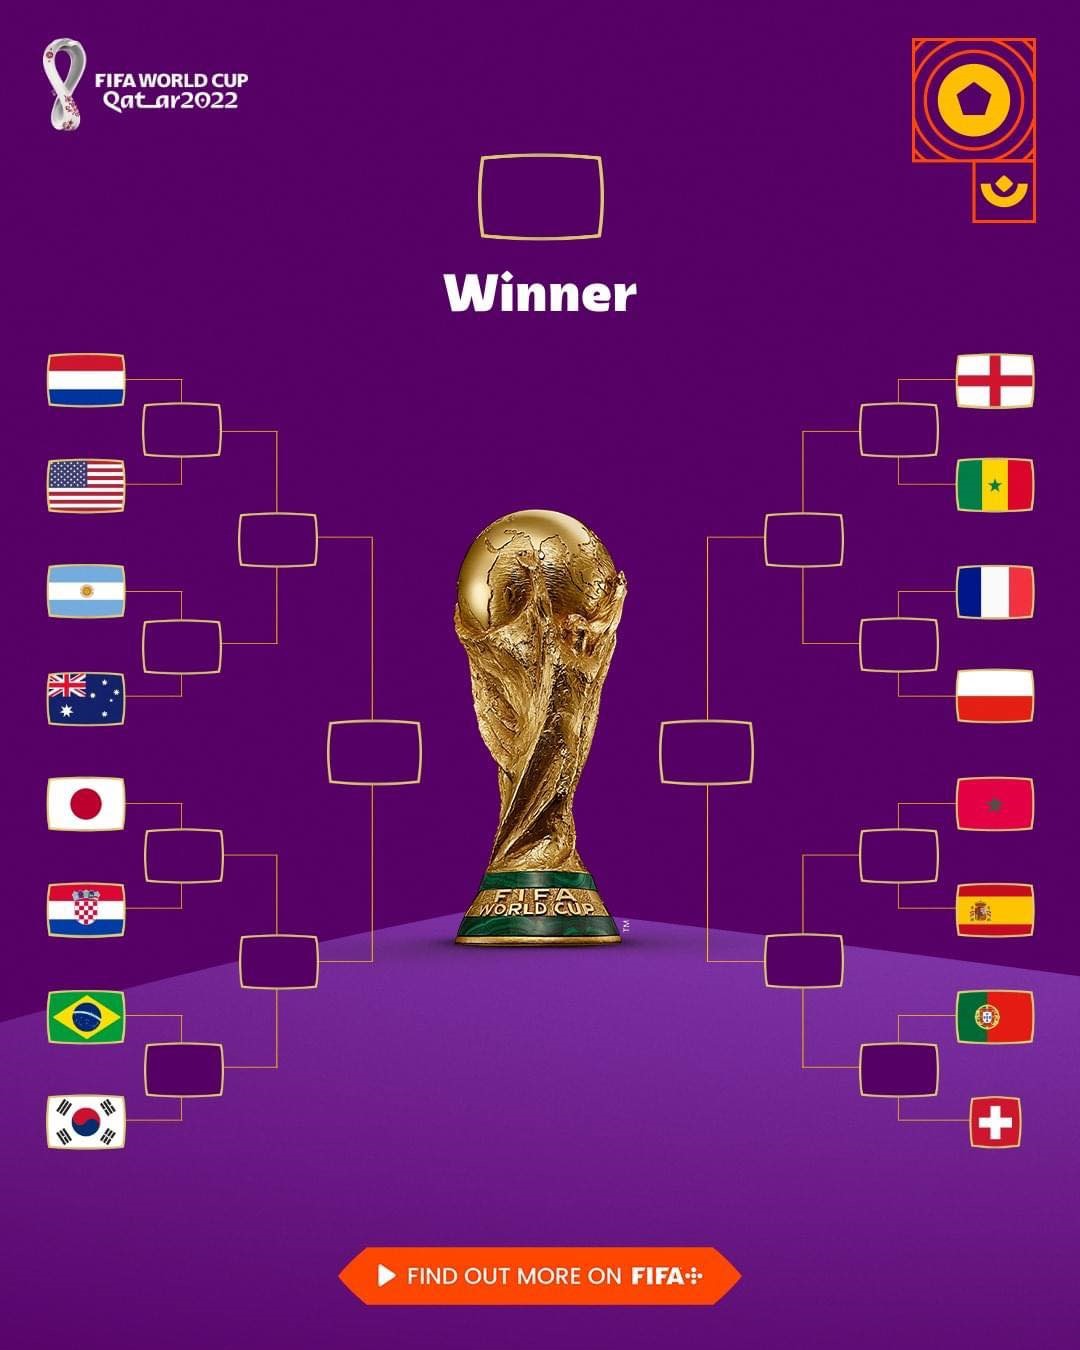 Lịch thi đấu vòng 1/8 World Cup 2022 đã được công bố, đem lại niềm vui cho những fan bóng đá trên toàn thế giới. Các trận đấu được chuẩn bị công phu và tinh tế nhất, đảm bảo sẽ mang đến những trận đấu kịch tính, hấp dẫn và đầy bất ngờ.